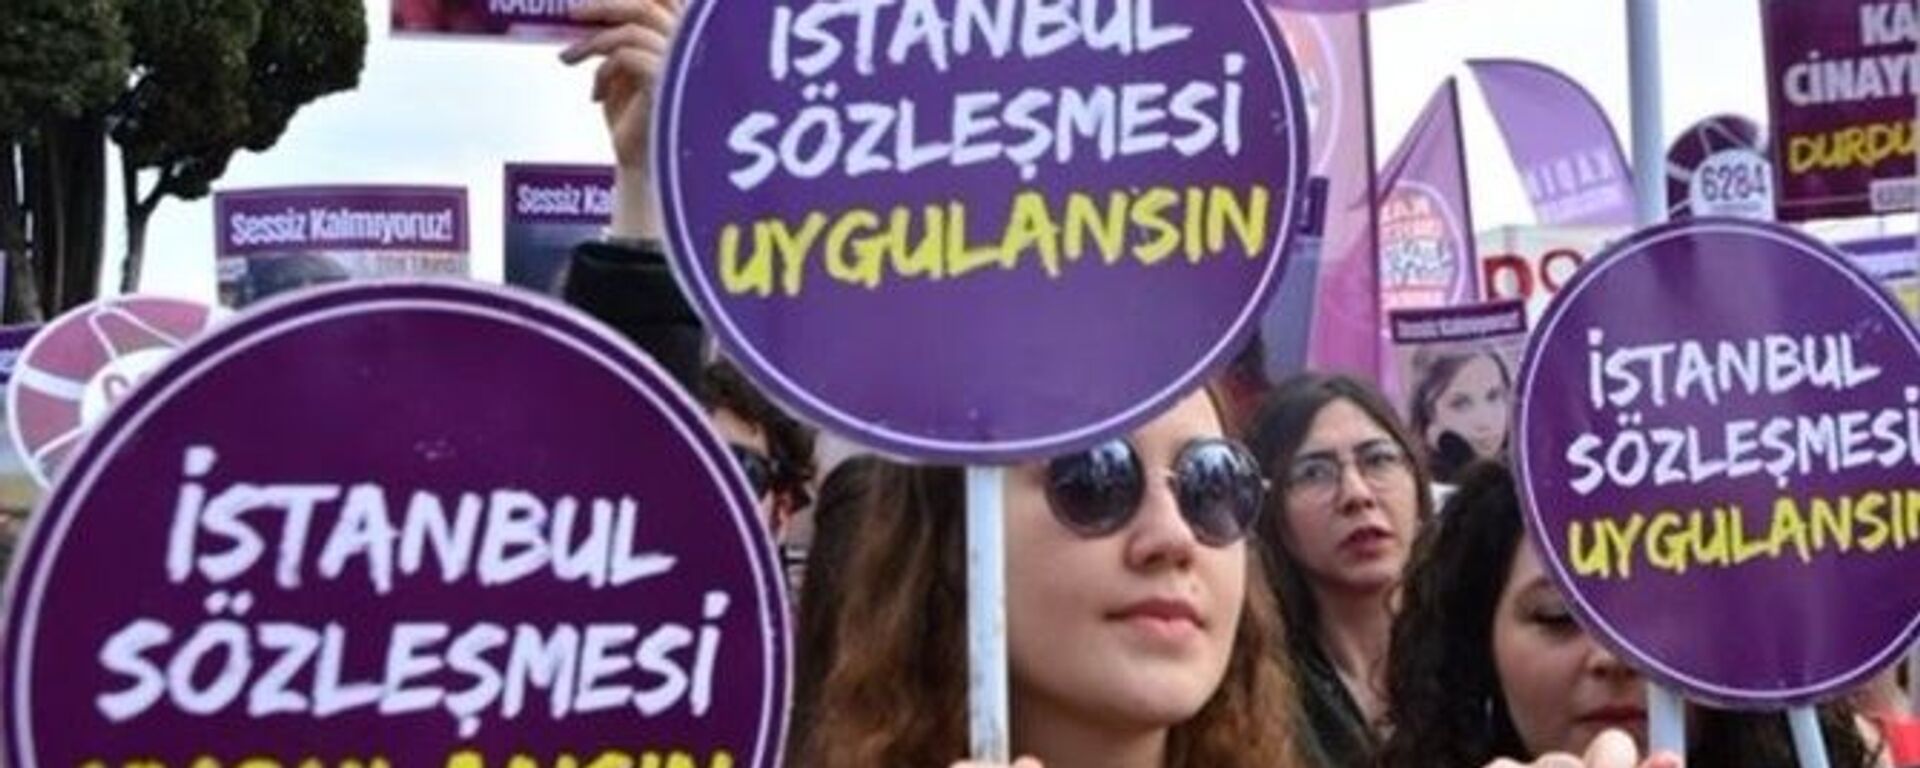 Kadına yönelik şiddet protestosu - İstanbul Sözleşmesi - Sputnik Türkiye, 1920, 18.11.2021